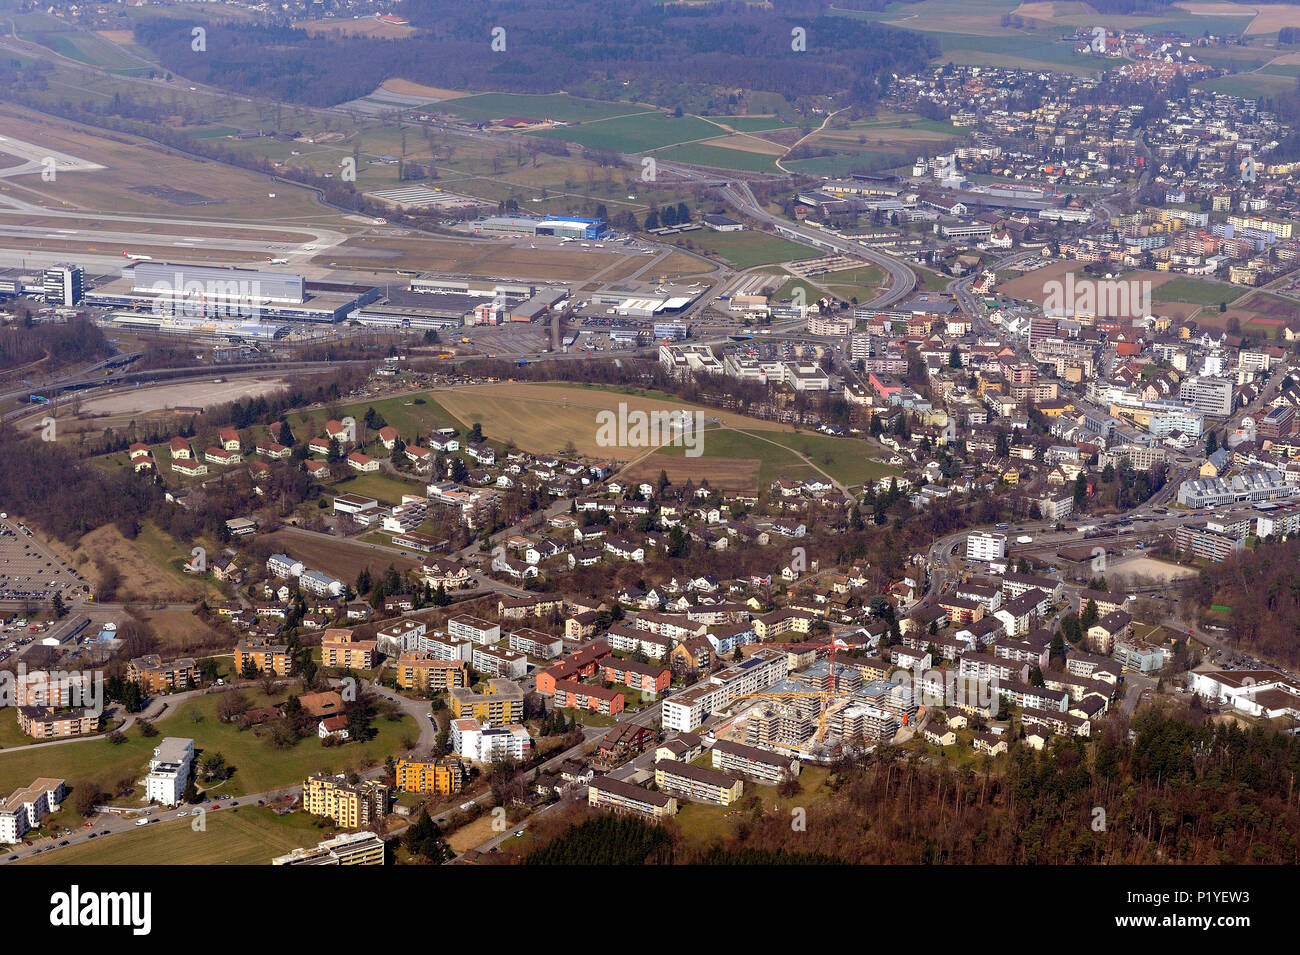 Switzerland, German-speaking Switserland, above Zurich International Airport Stock Photo